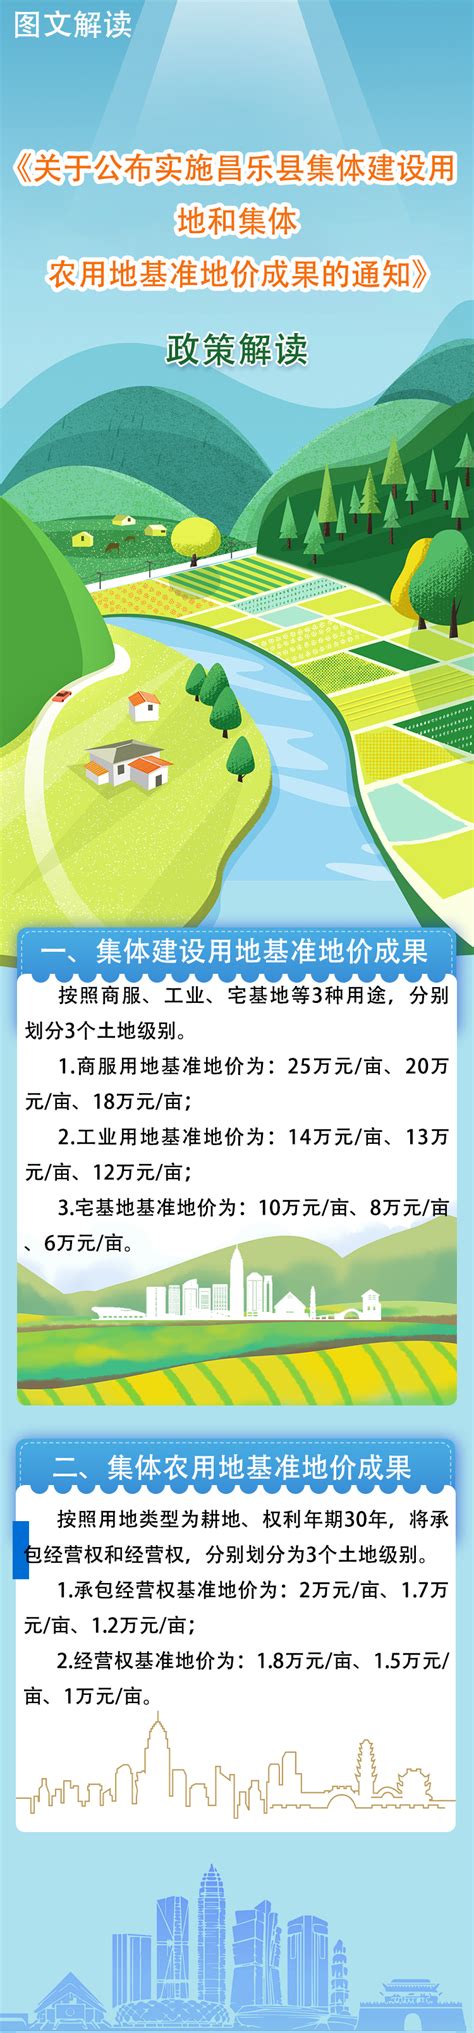 【图文解读】昌乐县人民政府办公室关于公布实施昌乐县集体建设用地和农用地基准地价成果的通知